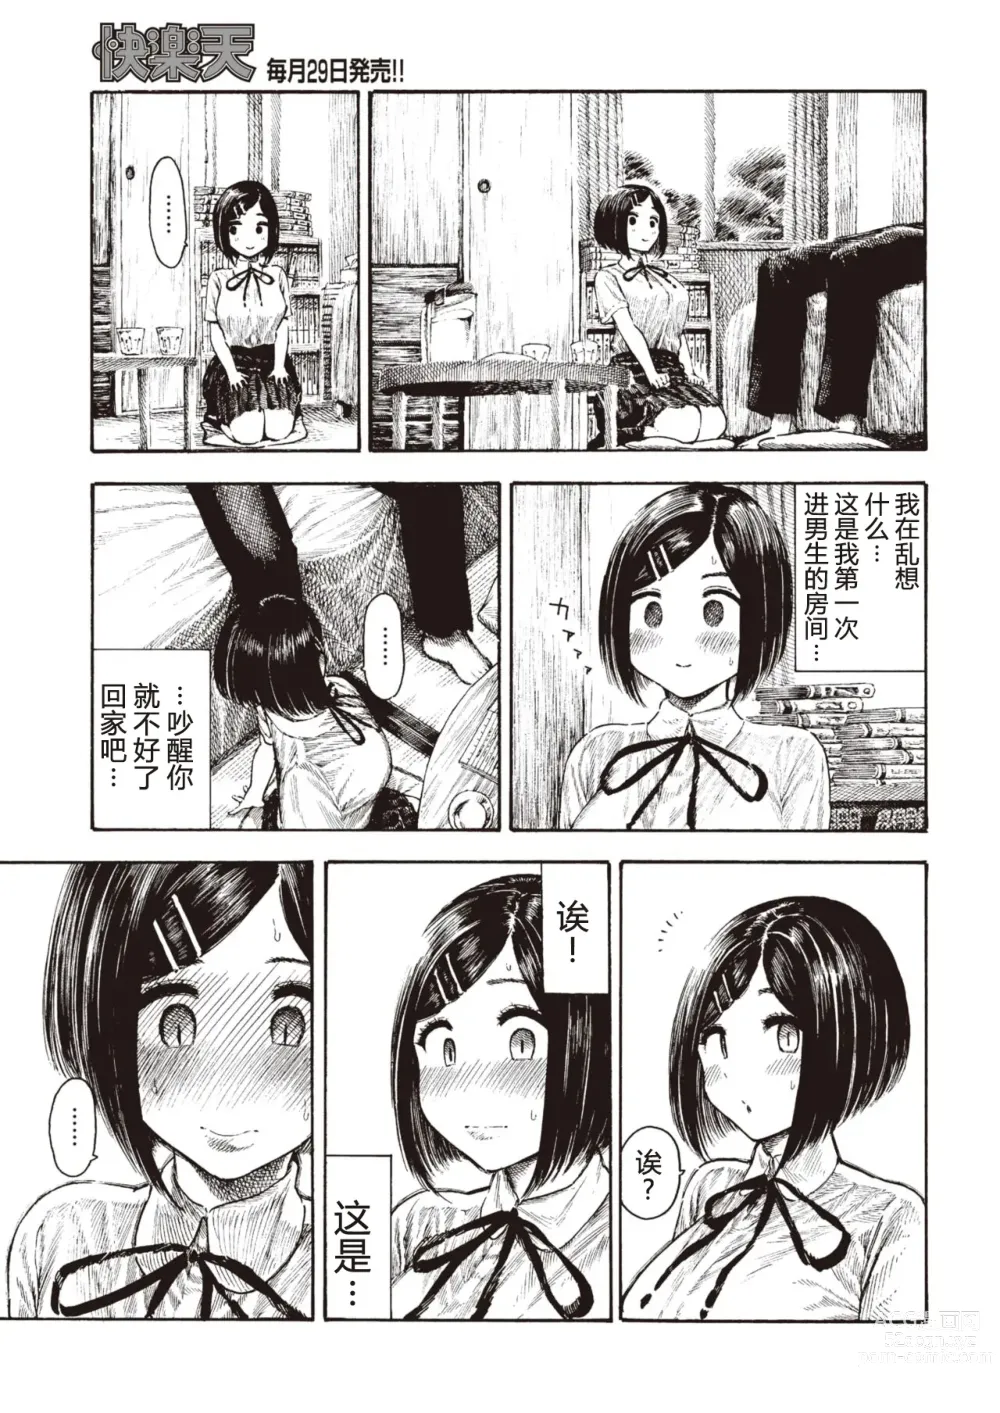 Page 5 of manga Manatsu-chan no Benkyoukai